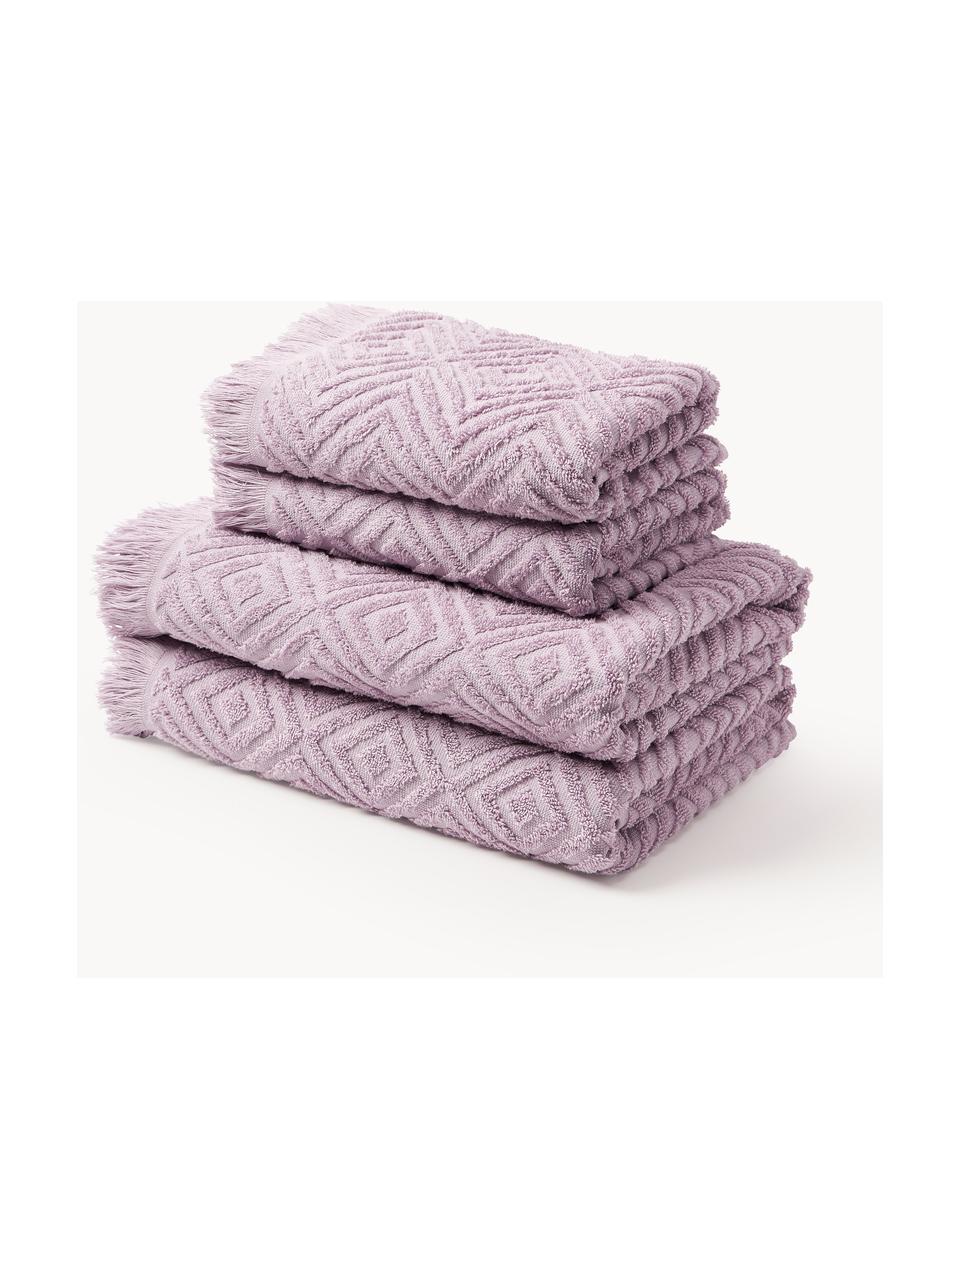 Handdoekenset Jacqui met hoog-laag patroon, in verschillende setgroottes, Lavendel, Set van 3 (gastendoekje, handdoek & douchehanddoek)